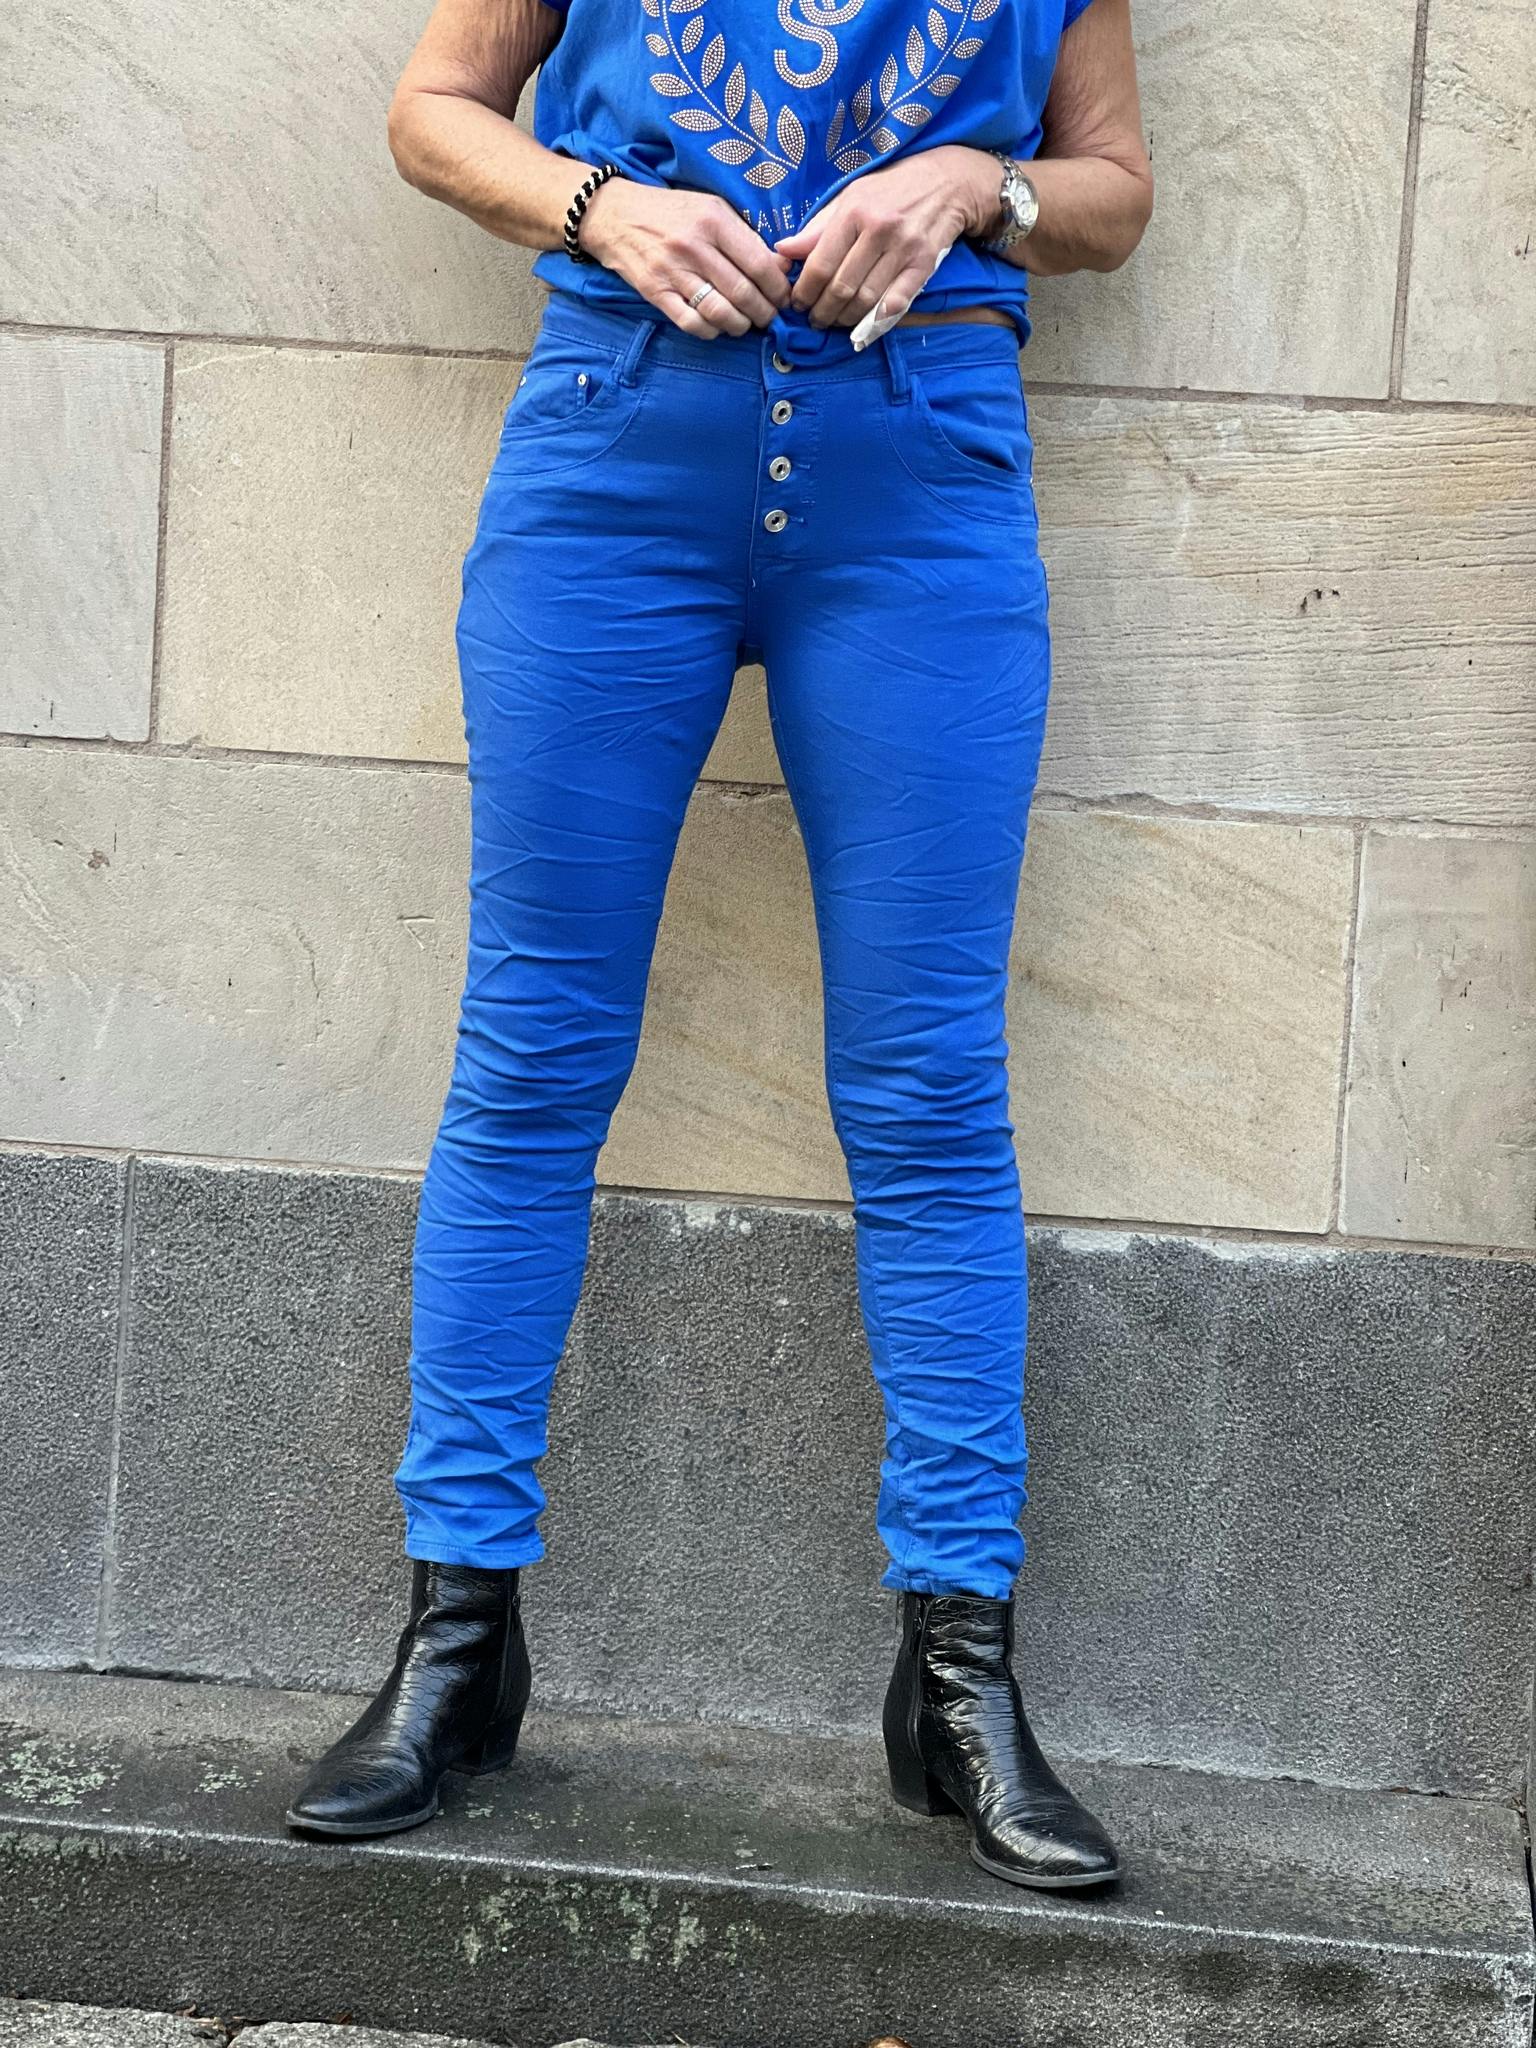 Koboltblå jeans med knappar